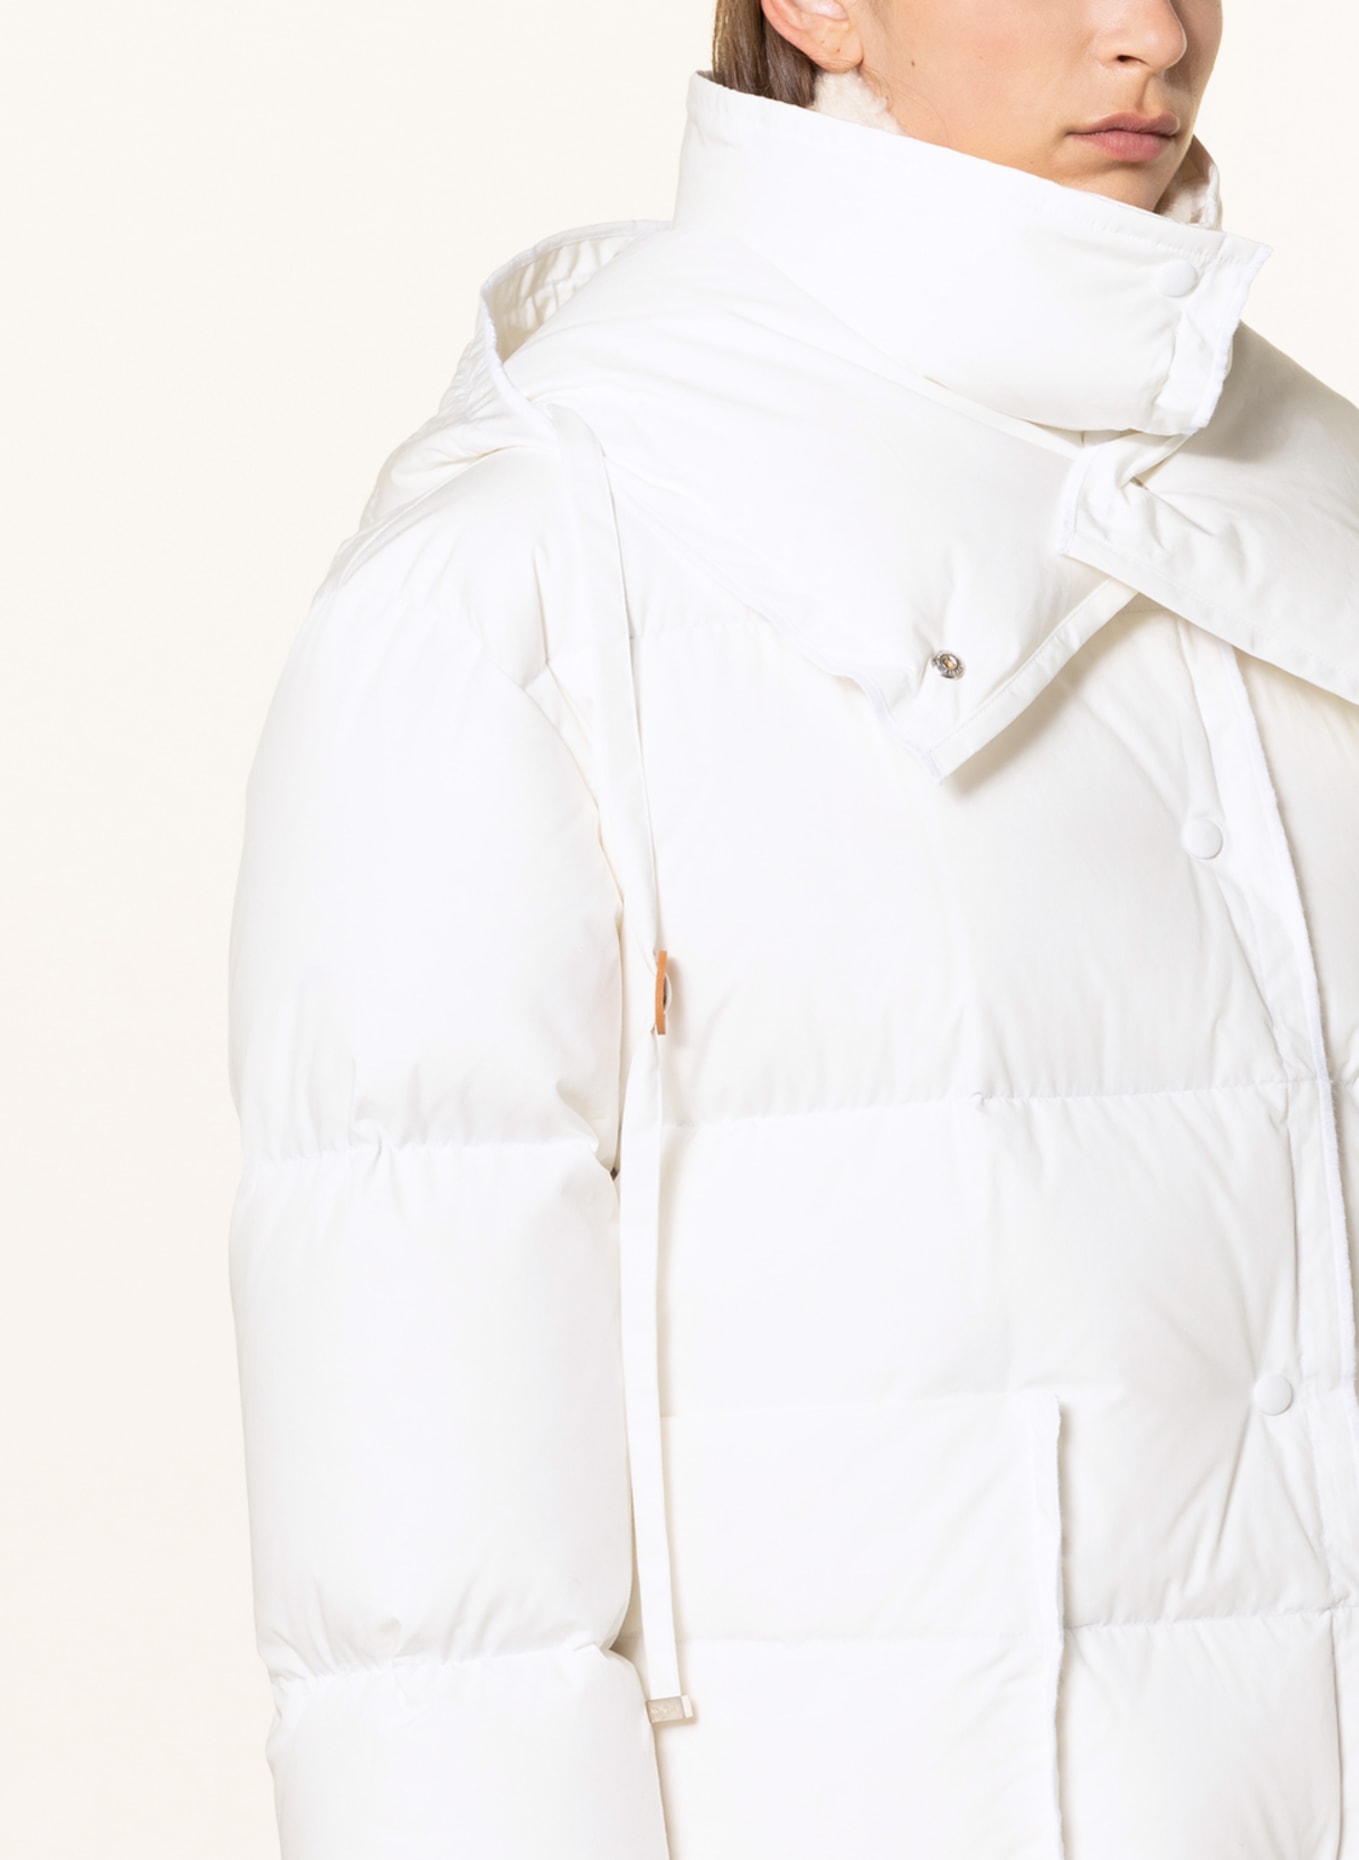 MONCLER GENIUS Down jacket SANDY with detachable hood, Color: ECRU (Image 6)